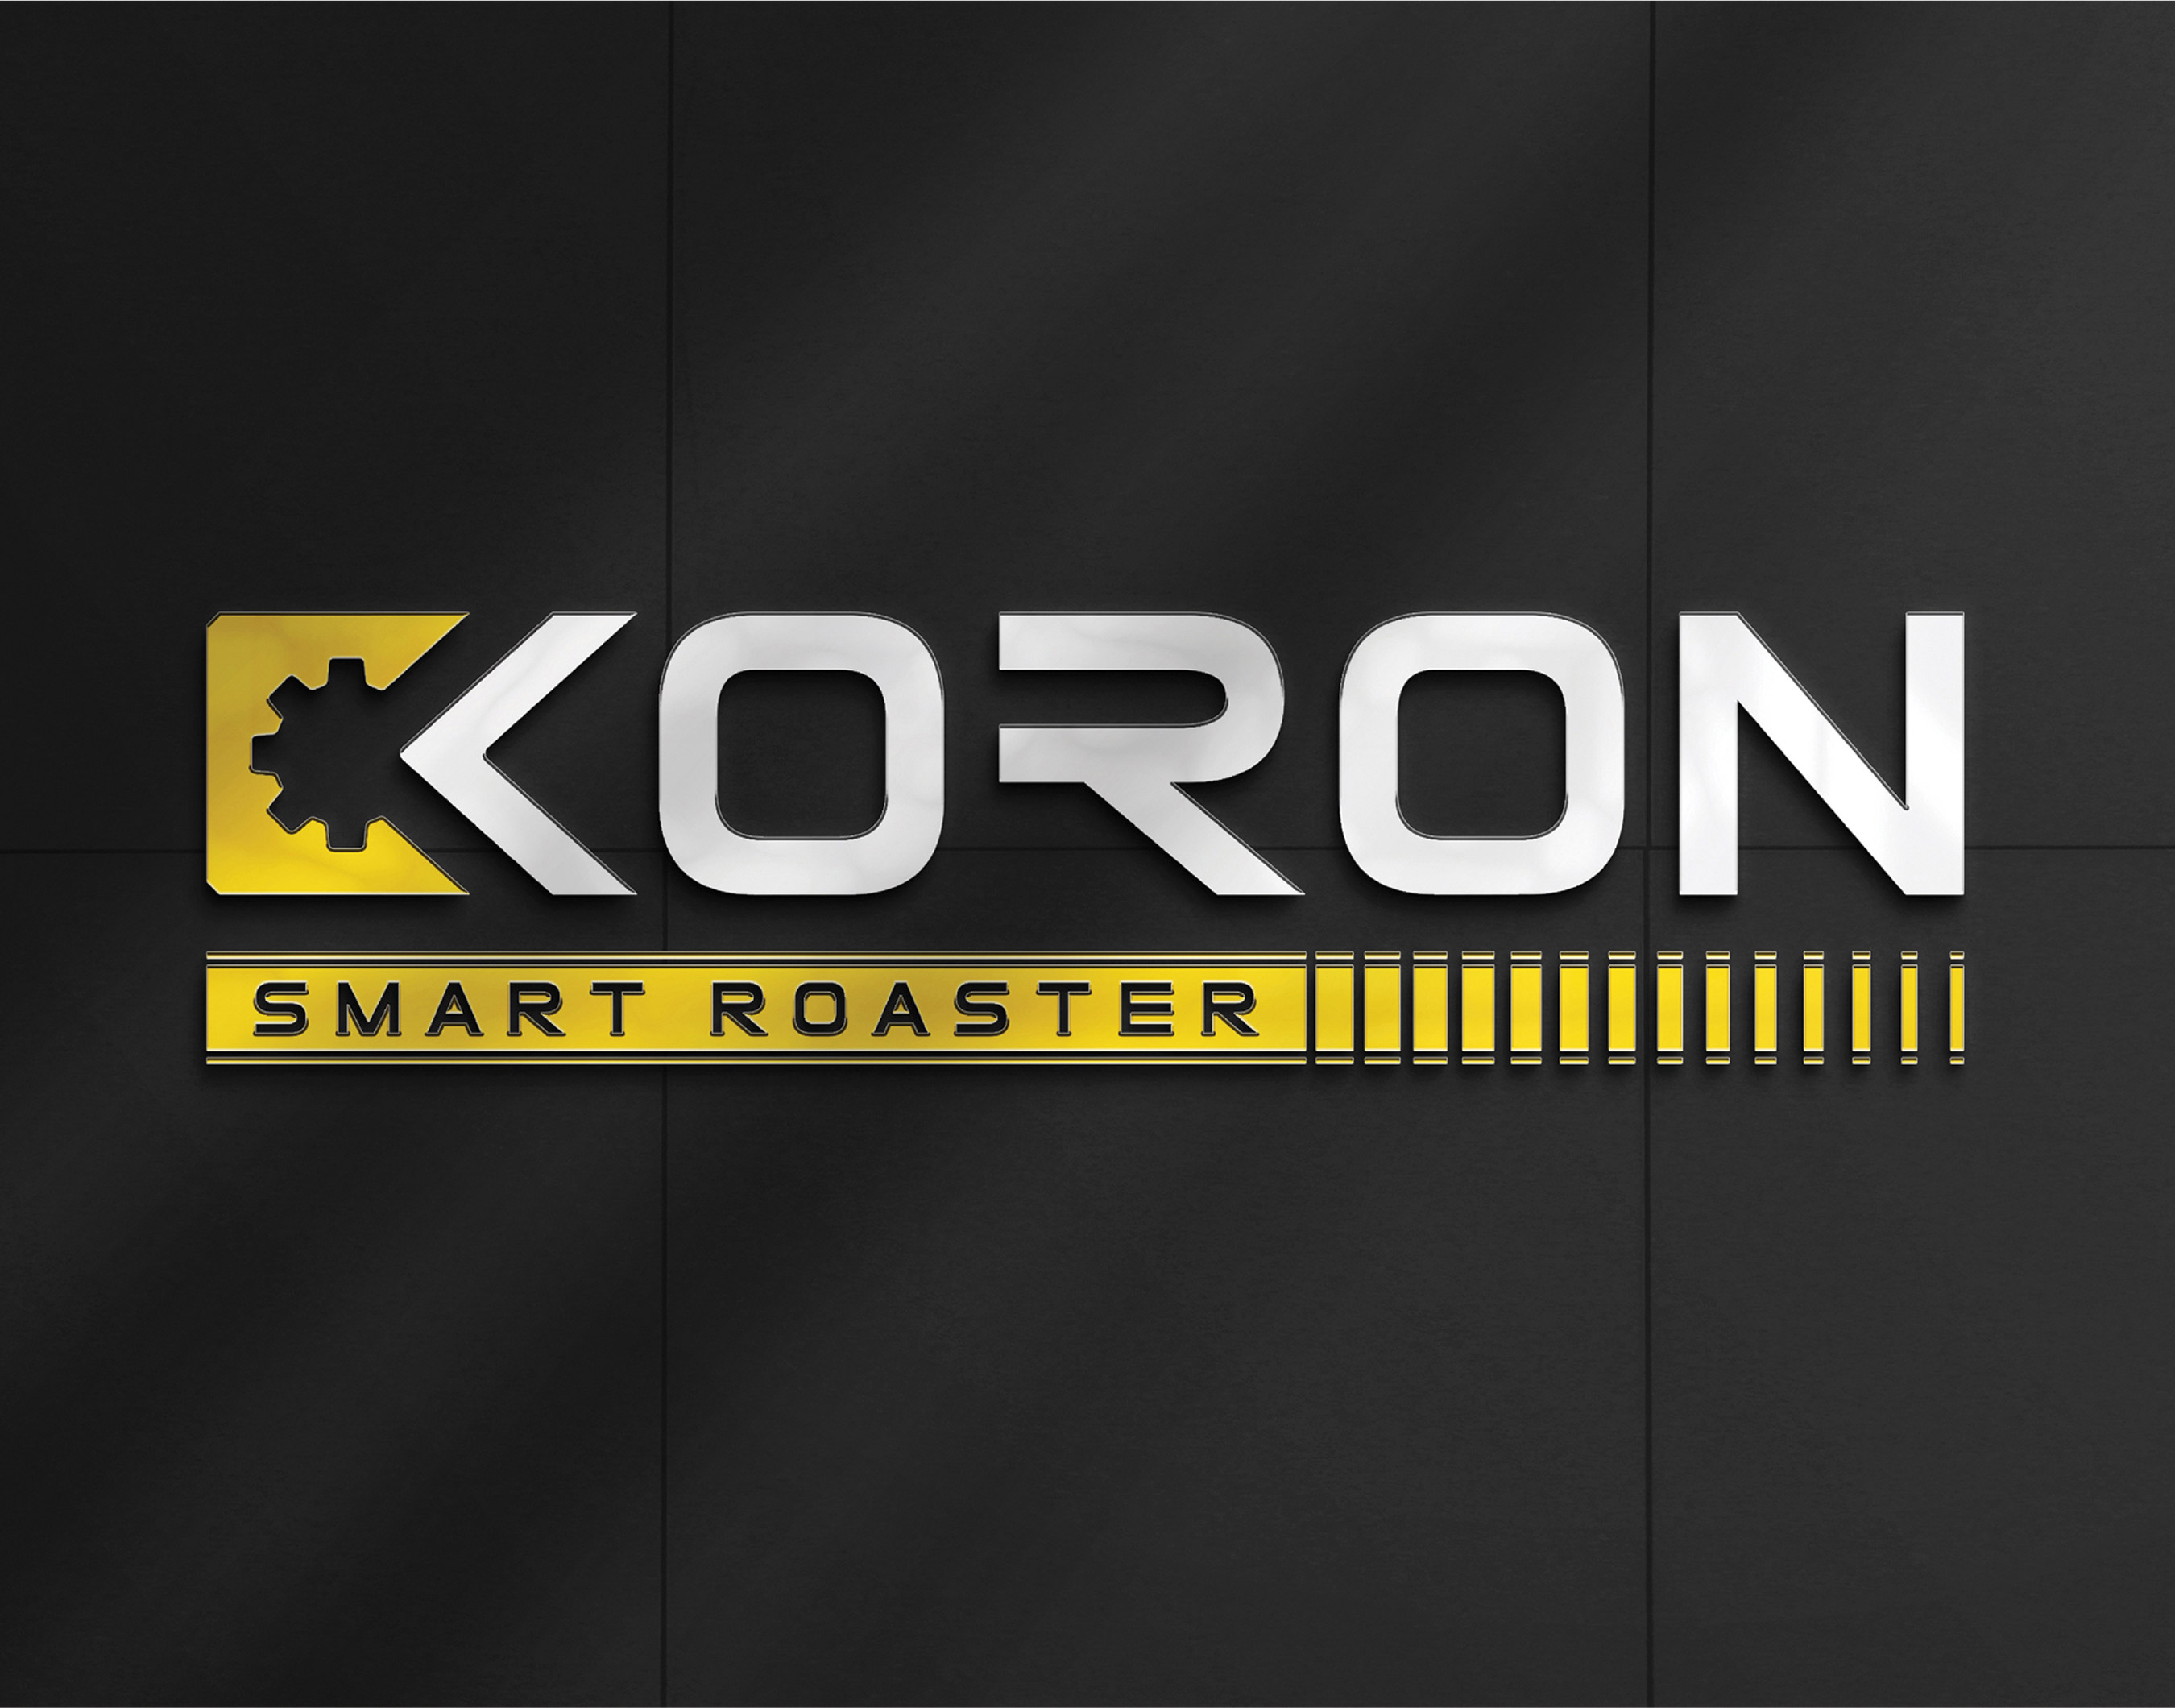 Koron Roaster Brand Guidelines